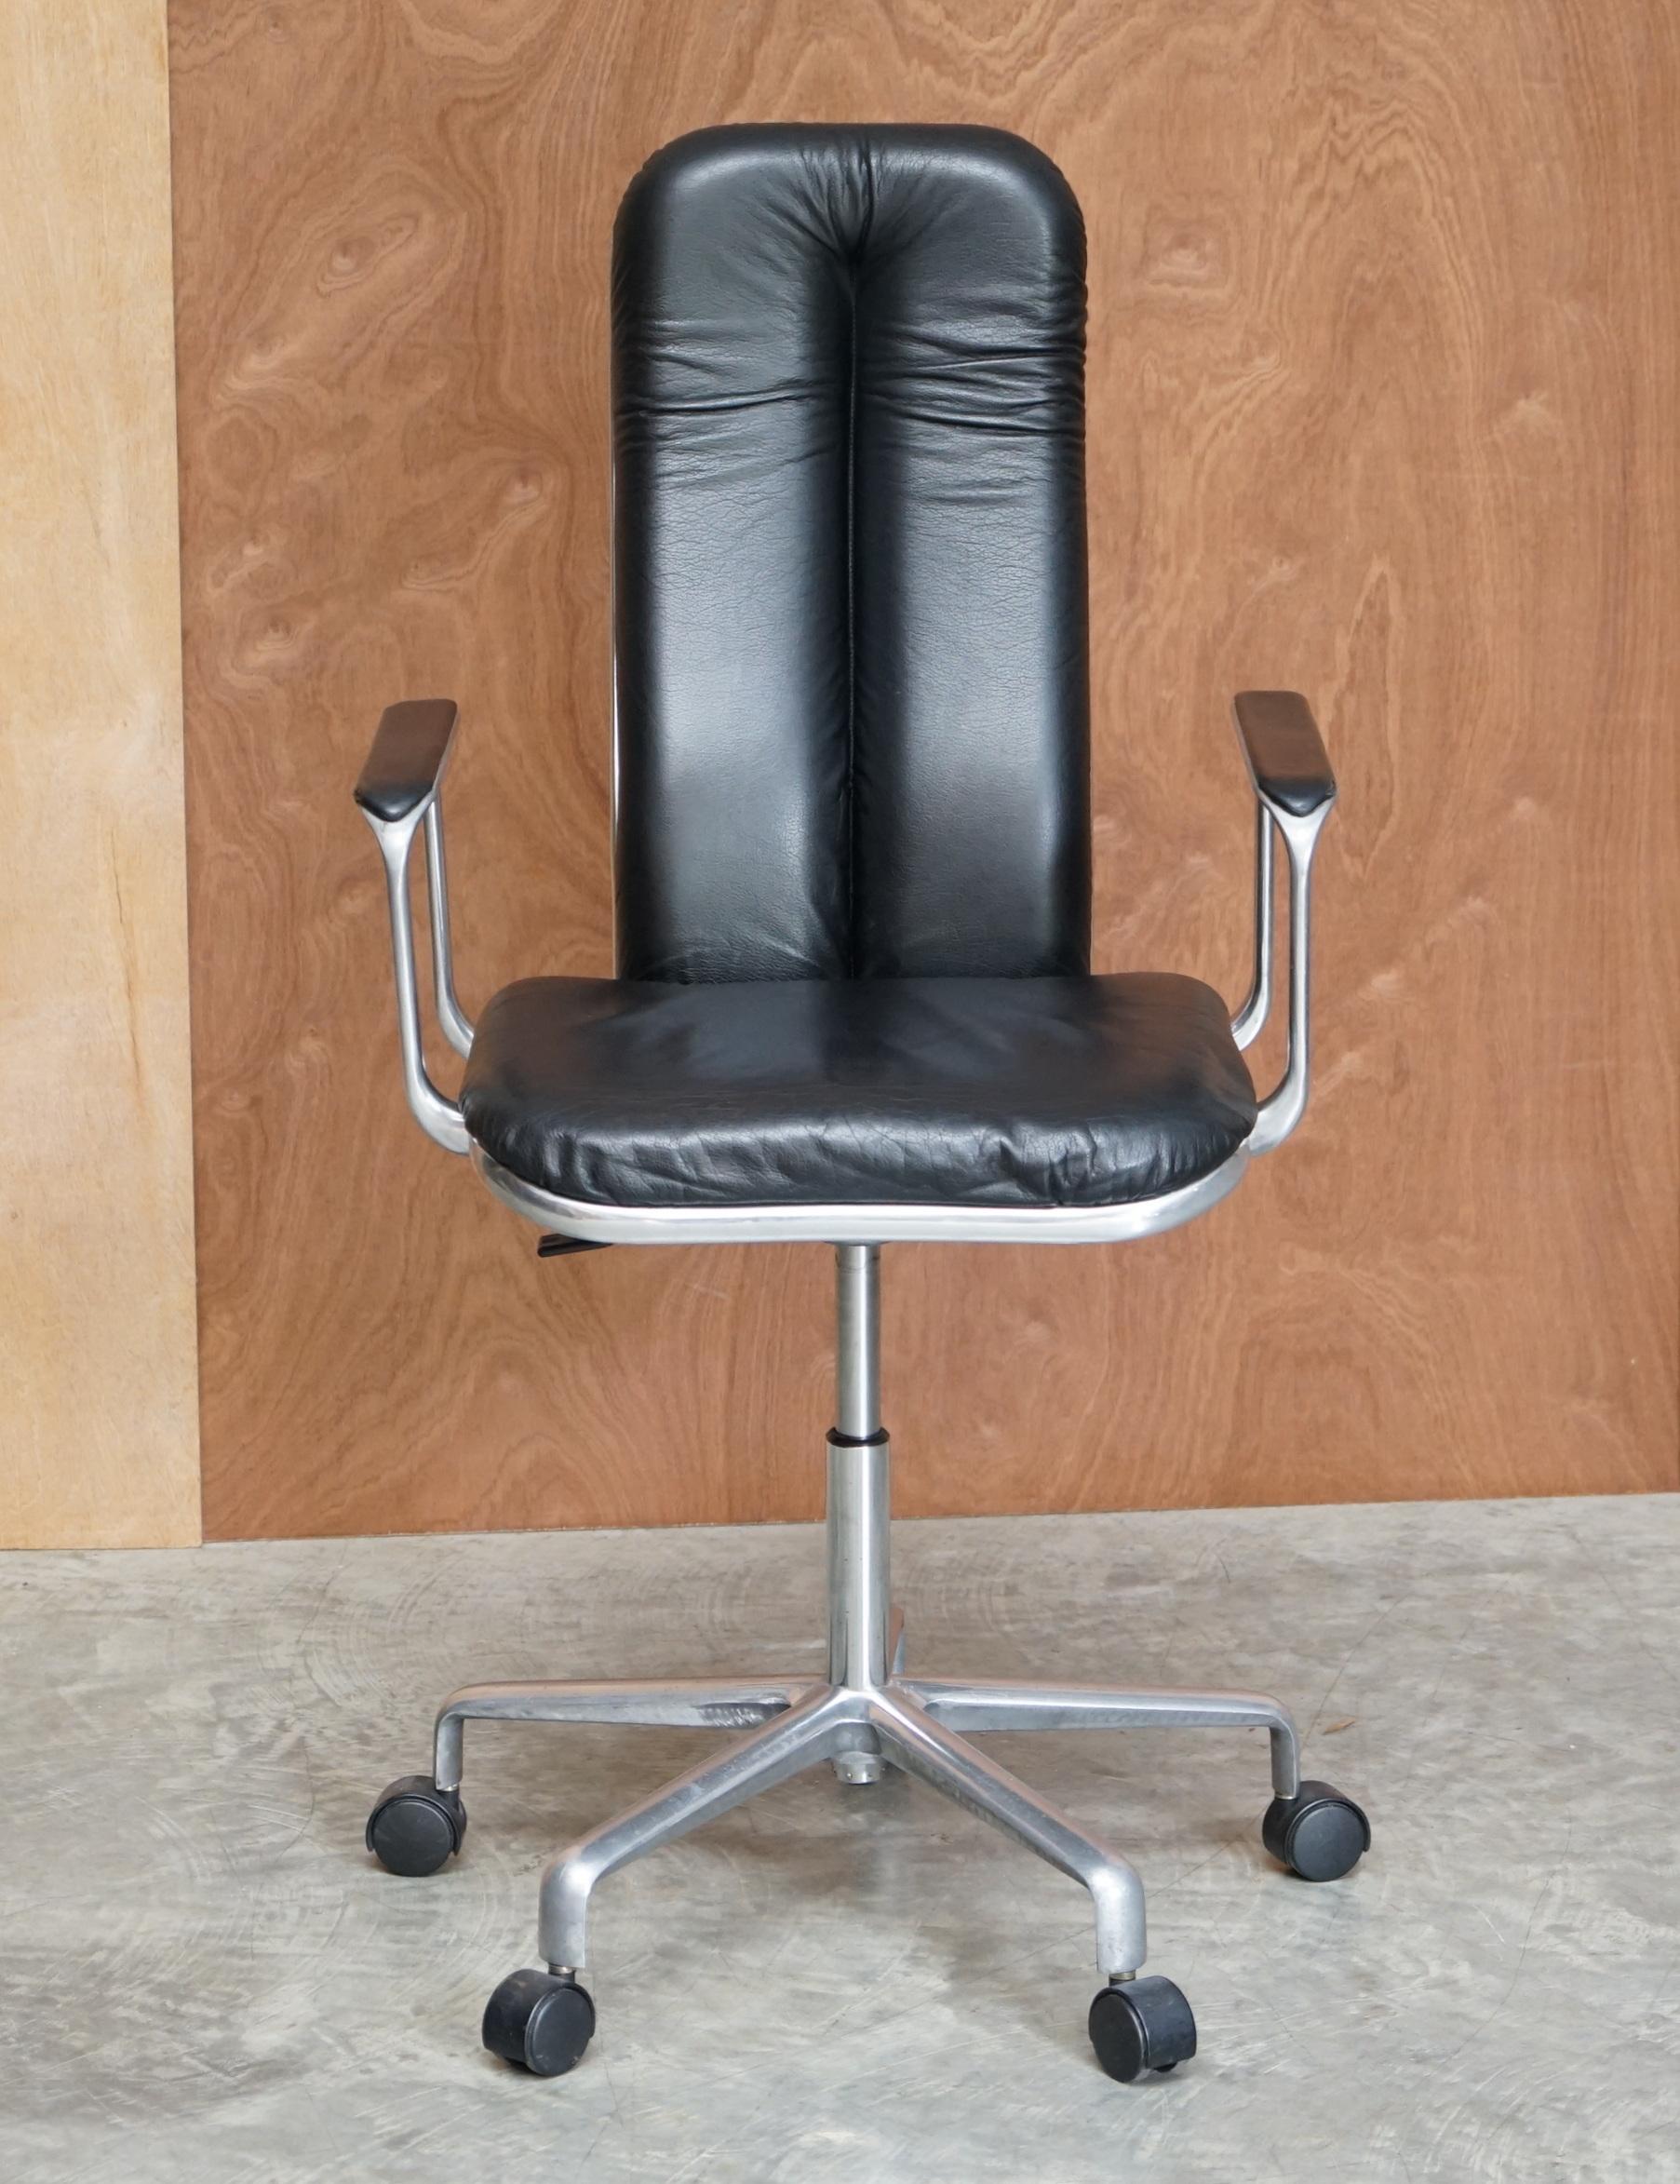 Nous sommes ravis d'offrir à la vente cette superbe chaise de bureau Frederick Scott Hille International en cuir noir avec cadre en chrome poli, datant des années 1970

Fauteuil de bureau en cuir noir Frederick Scott Hille International avec cadre